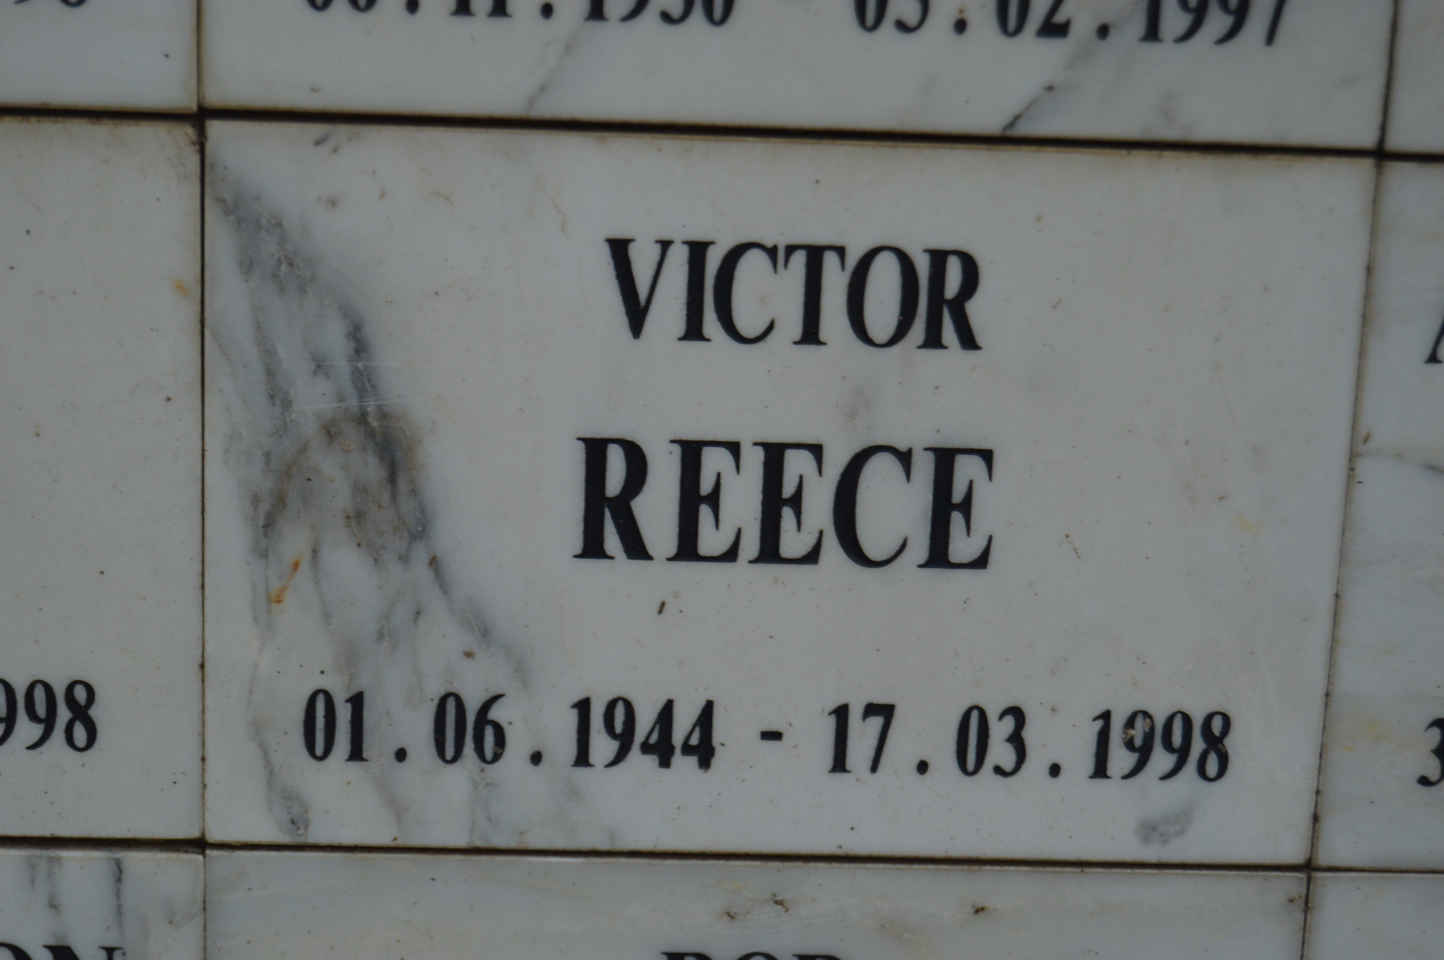 REECE Victor 1944-1998